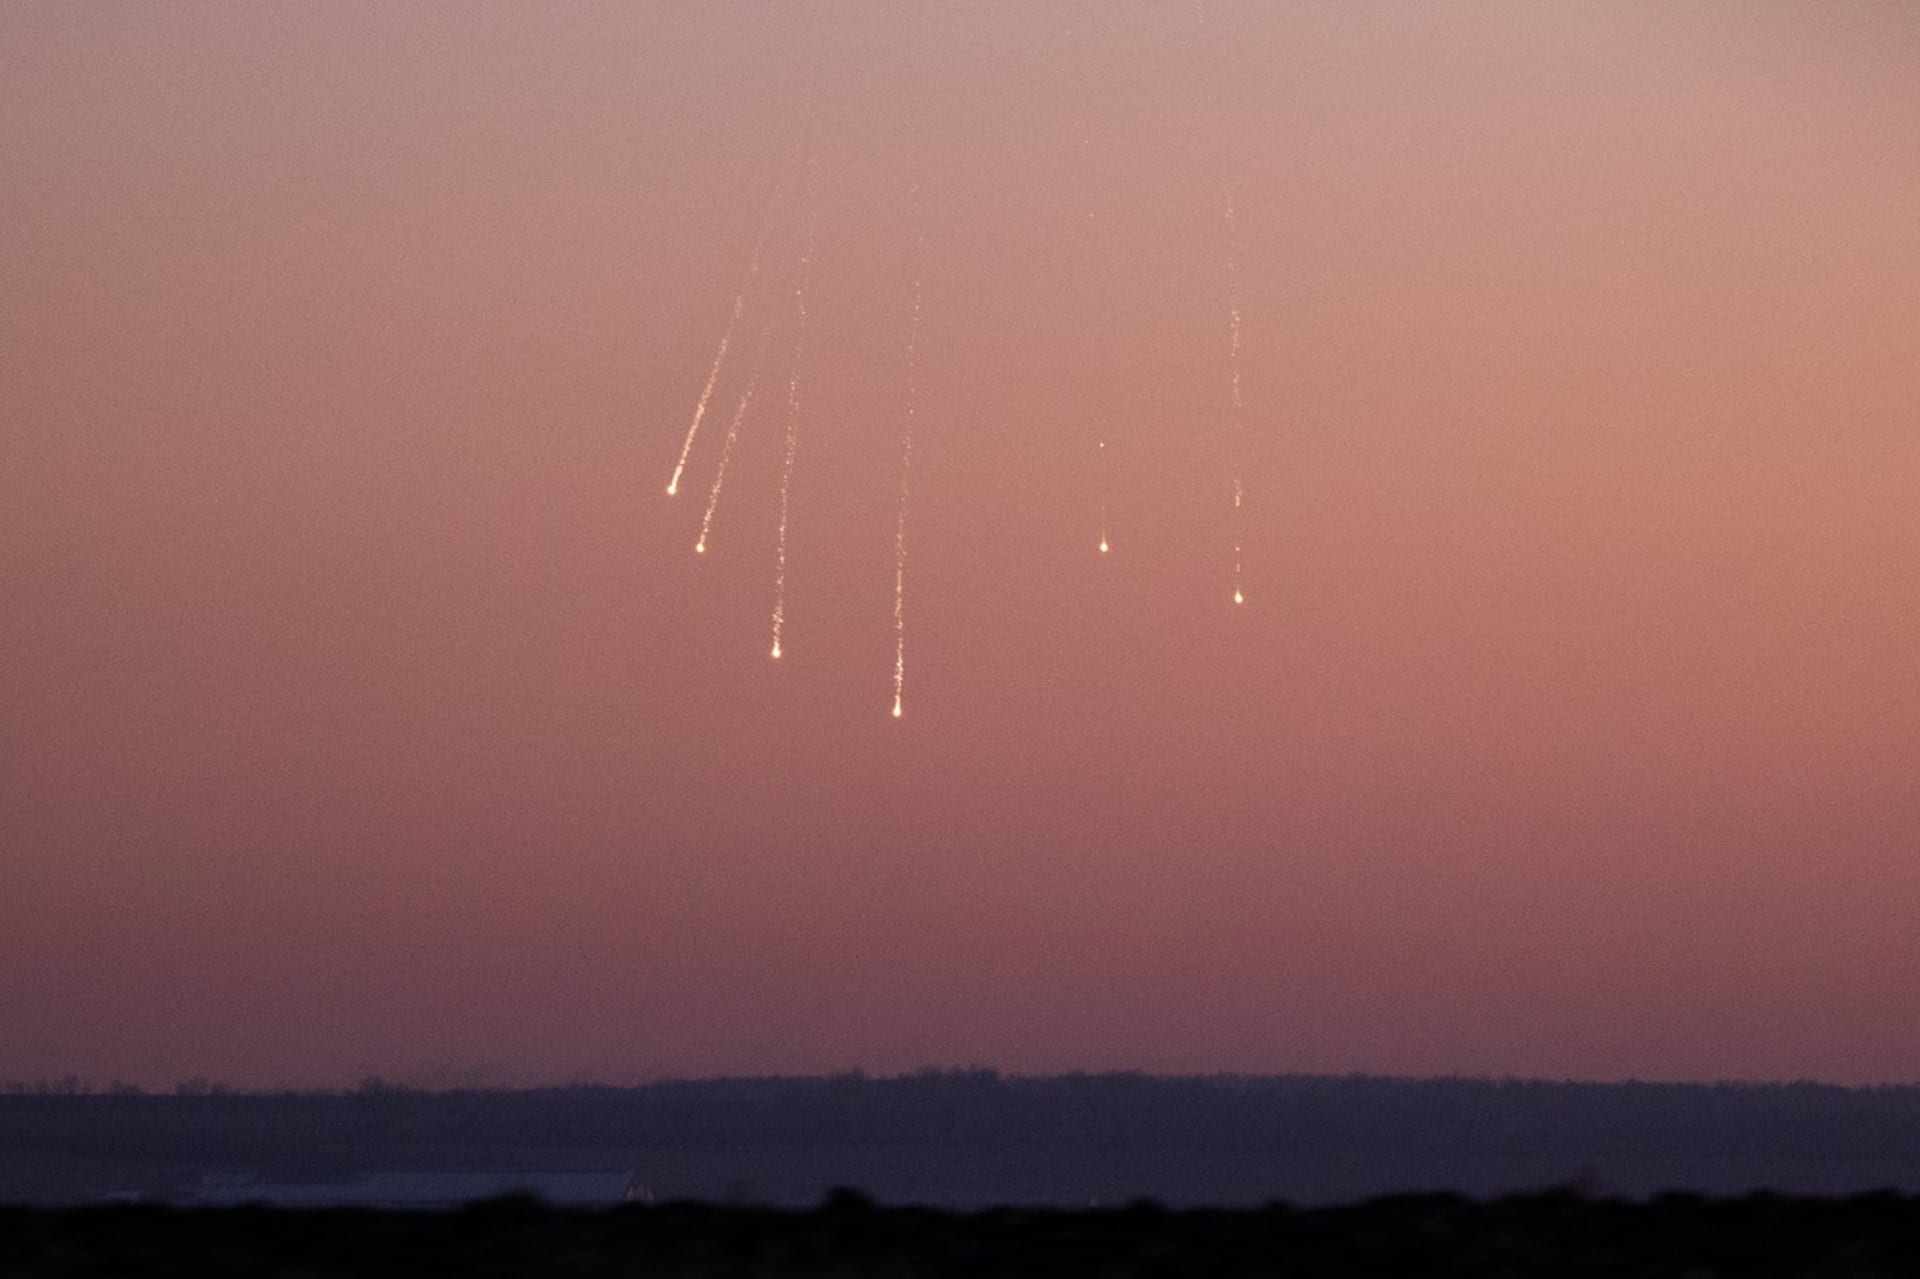 Zápalná munice (fosfor nebo termit), která se 25. ledna 2023 objevila na obloze u Bachmutu.